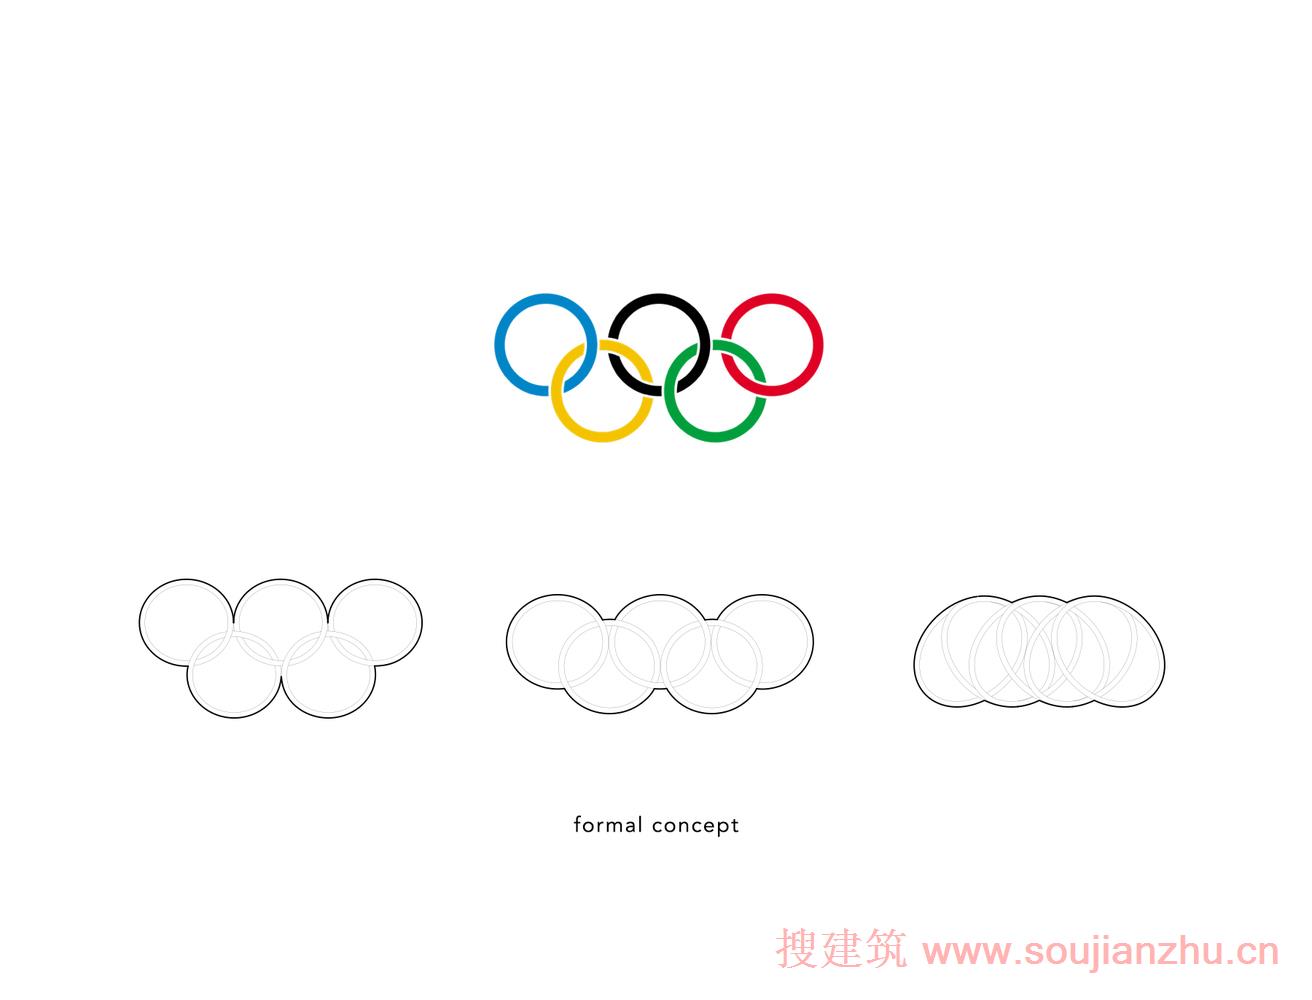 北京·2022北京冬季奥运会三山桥--灵感来自奥运五环